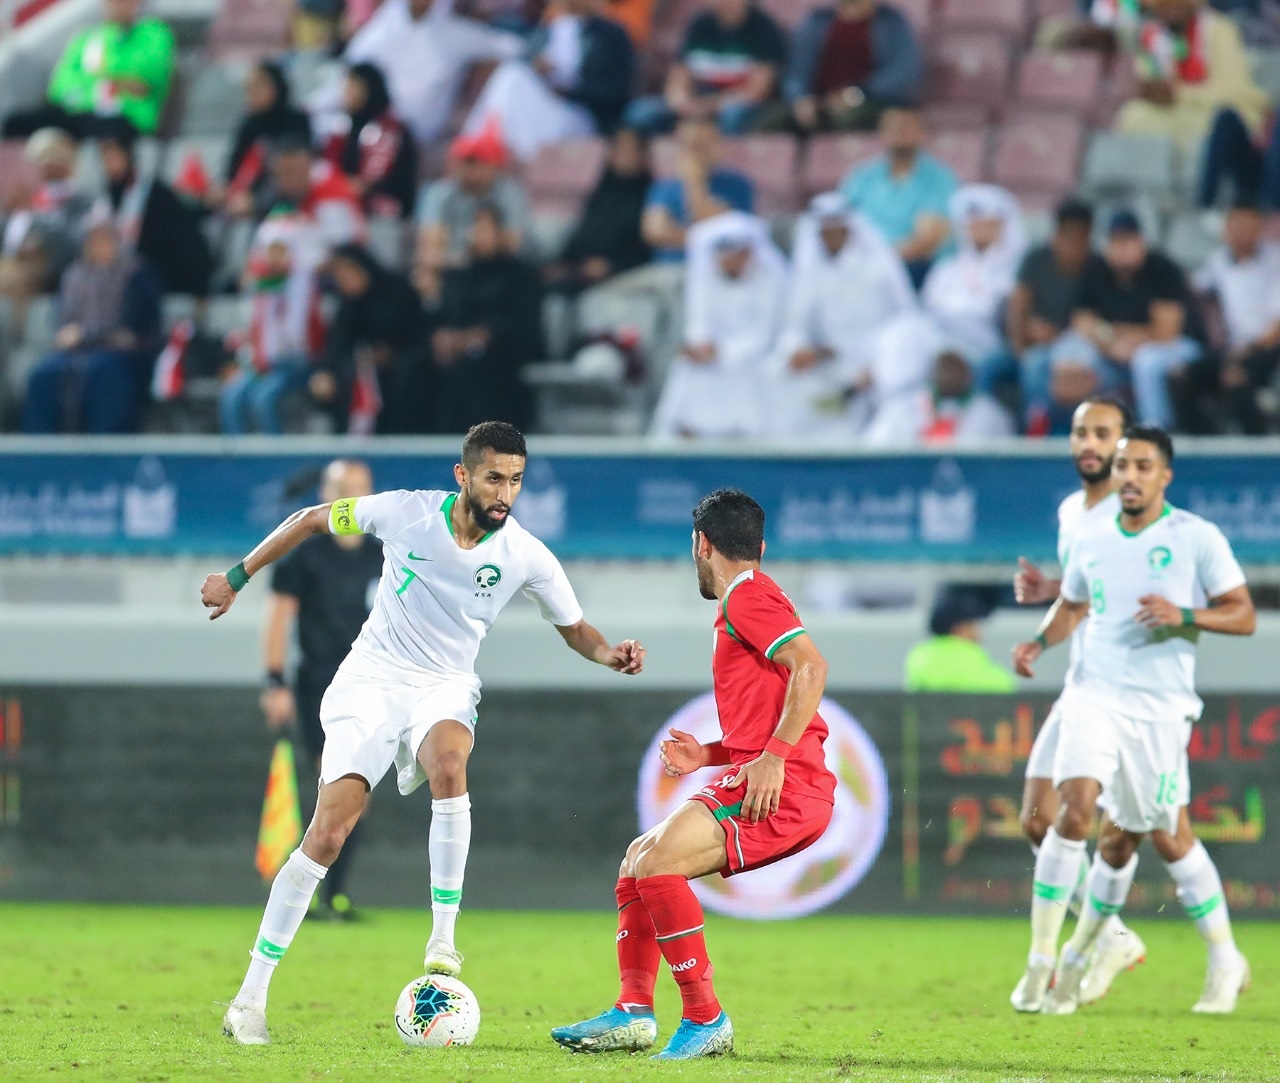 الخبرة سر تفوق الأخضر في كأس الخليج